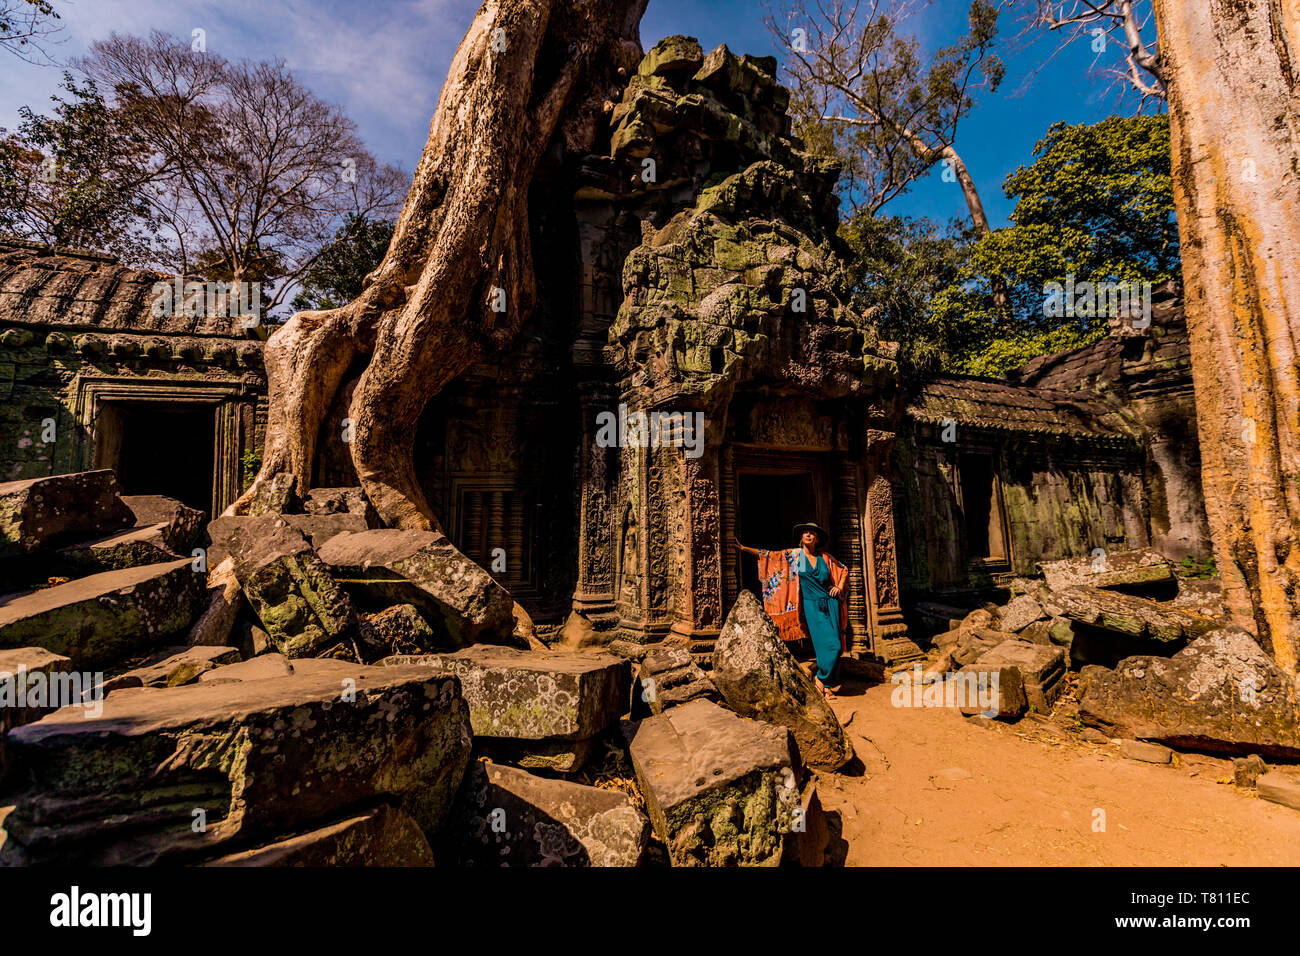 Donna americana turistico a Angkor Wat, templi di Angkor, Sito Patrimonio Mondiale dell'UNESCO, Siem Reap, Cambogia, Indocina, Asia sud-orientale, Asia Foto Stock